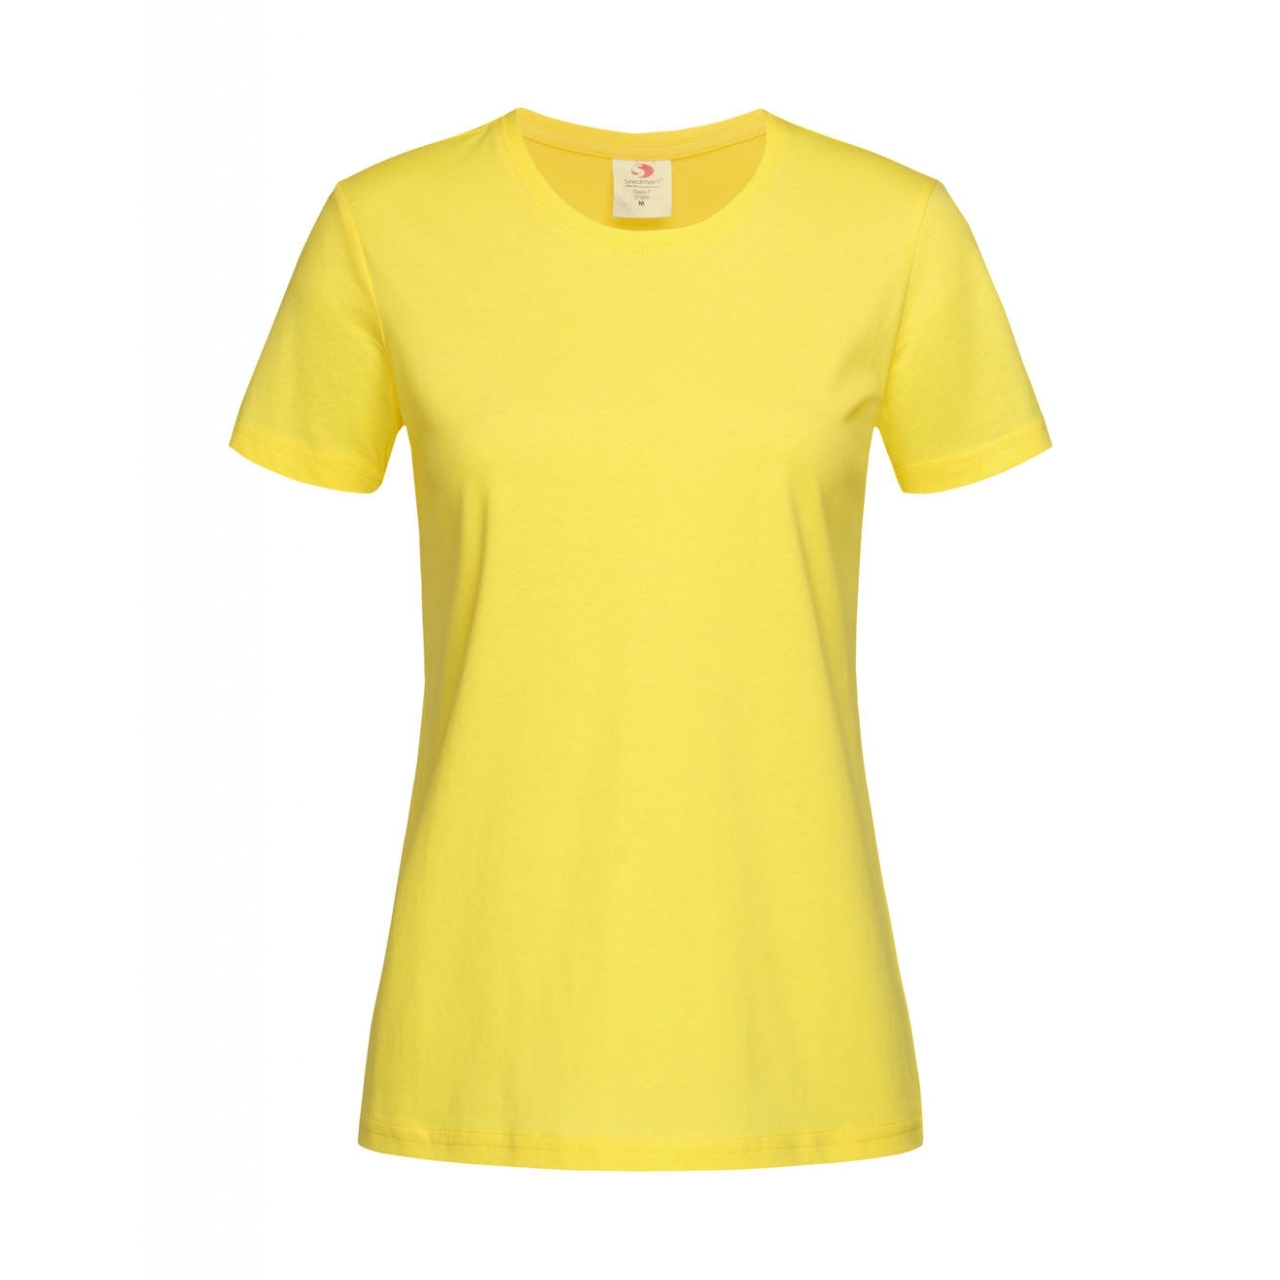 Tričko dámské Stedman Fitted s kulatým výstřihem - žluté, XS